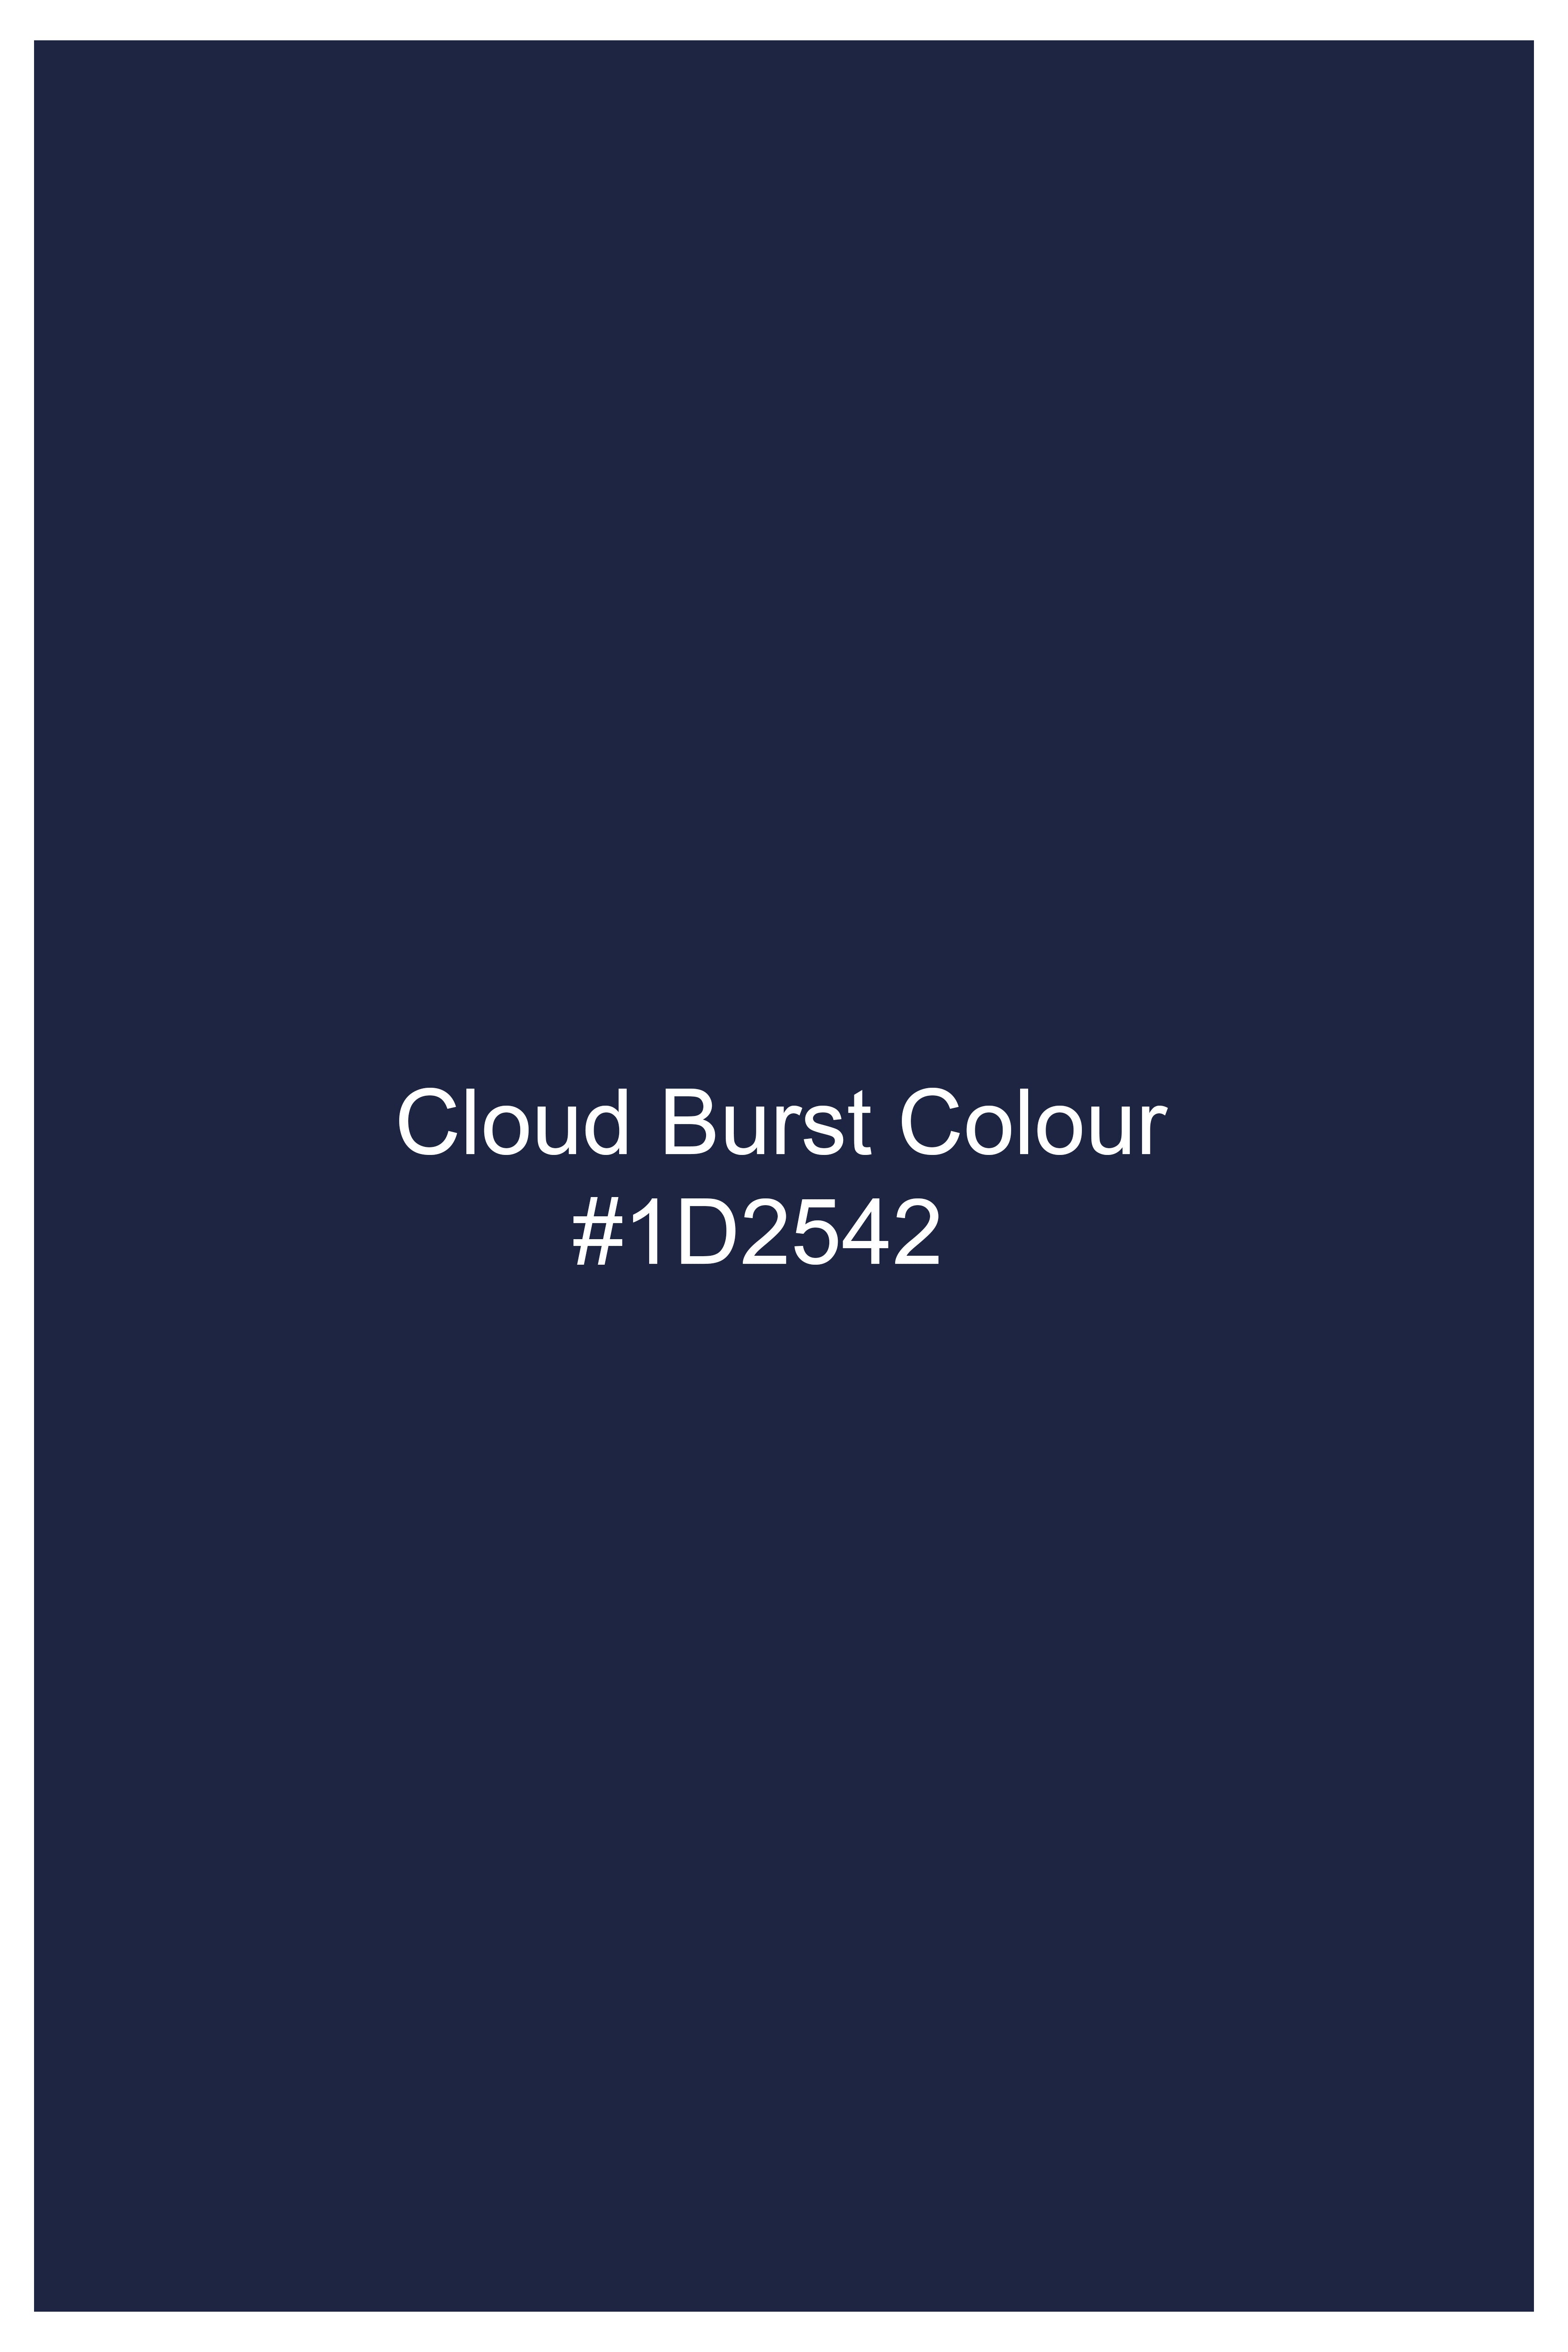 Cloud Burst Blue Cross Buttoned Wool Rich Bandhgala Suit ST3061-CBG2-36, ST3061-CBG2-38, ST3061-CBG2-40, ST3061-CBG2-42, ST3061-CBG2-44, ST3061-CBG2-46, ST3061-CBG2-48, ST3061-CBG2-50, ST3061-CBG2-52, ST3061-CBG2-54, ST3061-CBG2-56, ST3061-CBG2-58, ST3061-CBG2-60